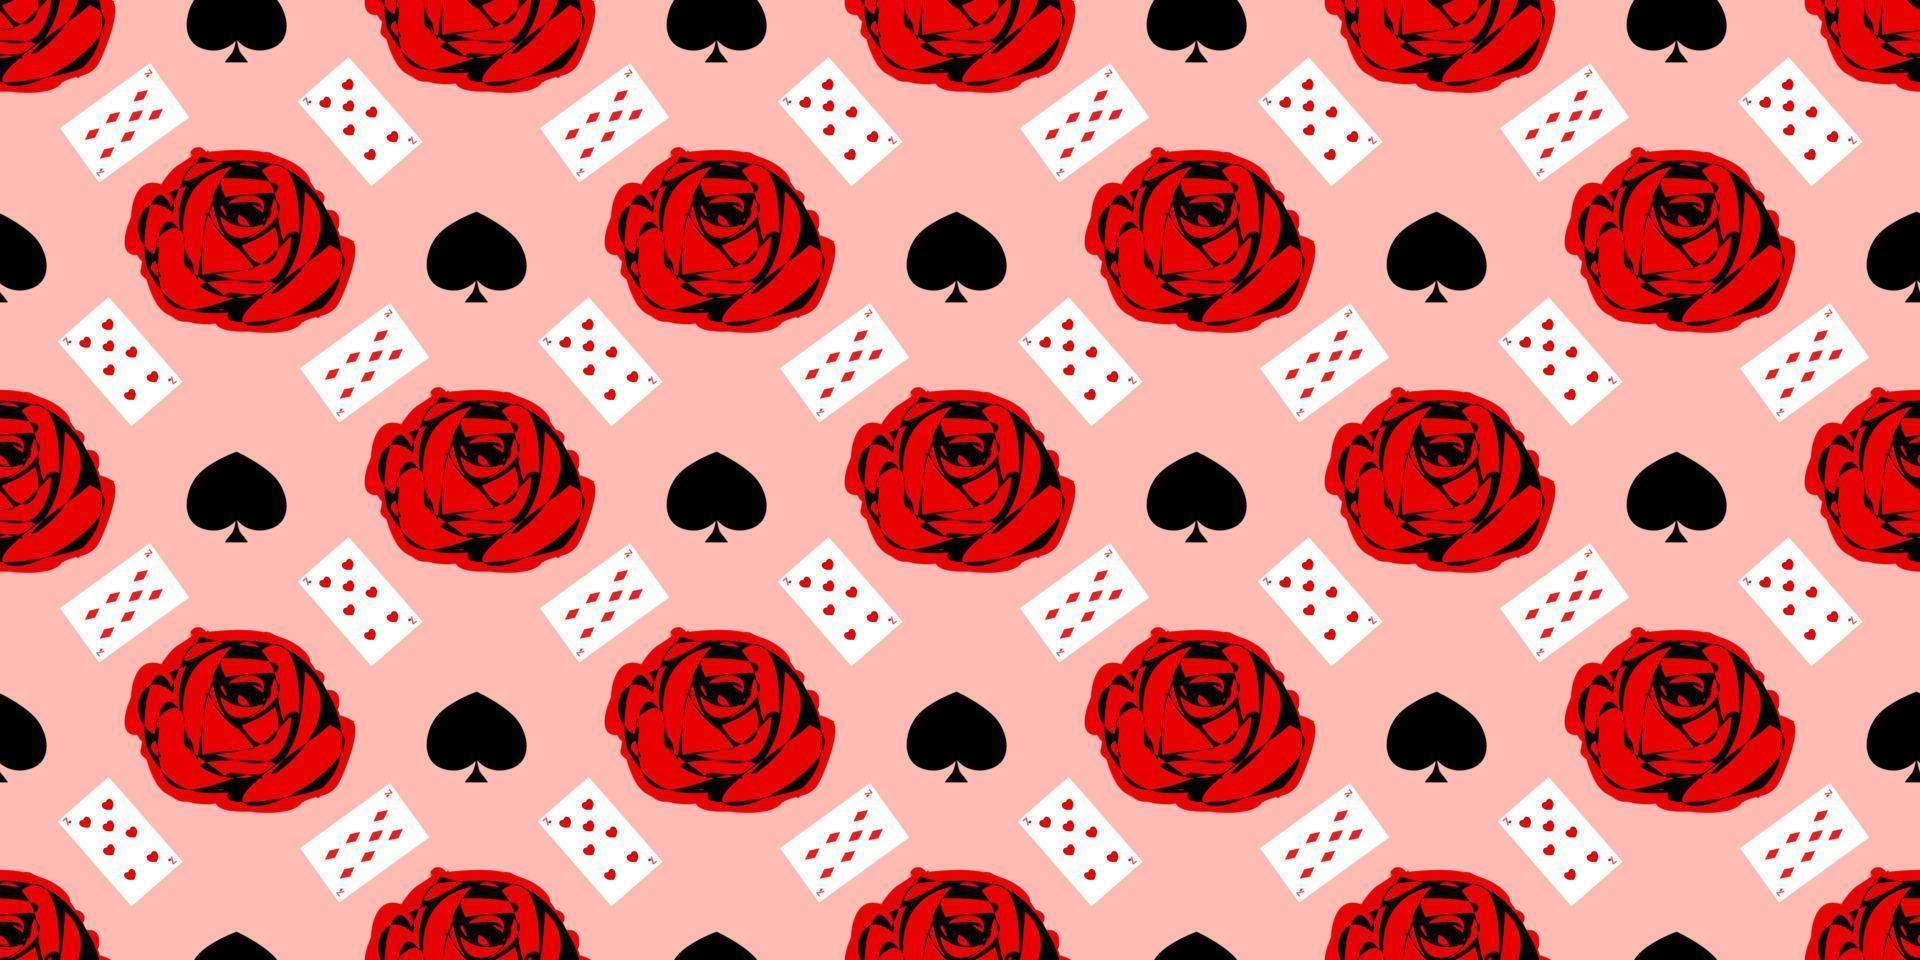 Spielkarten Musterdesign. rote Rose auf einem rosa Hintergrund.. vektor